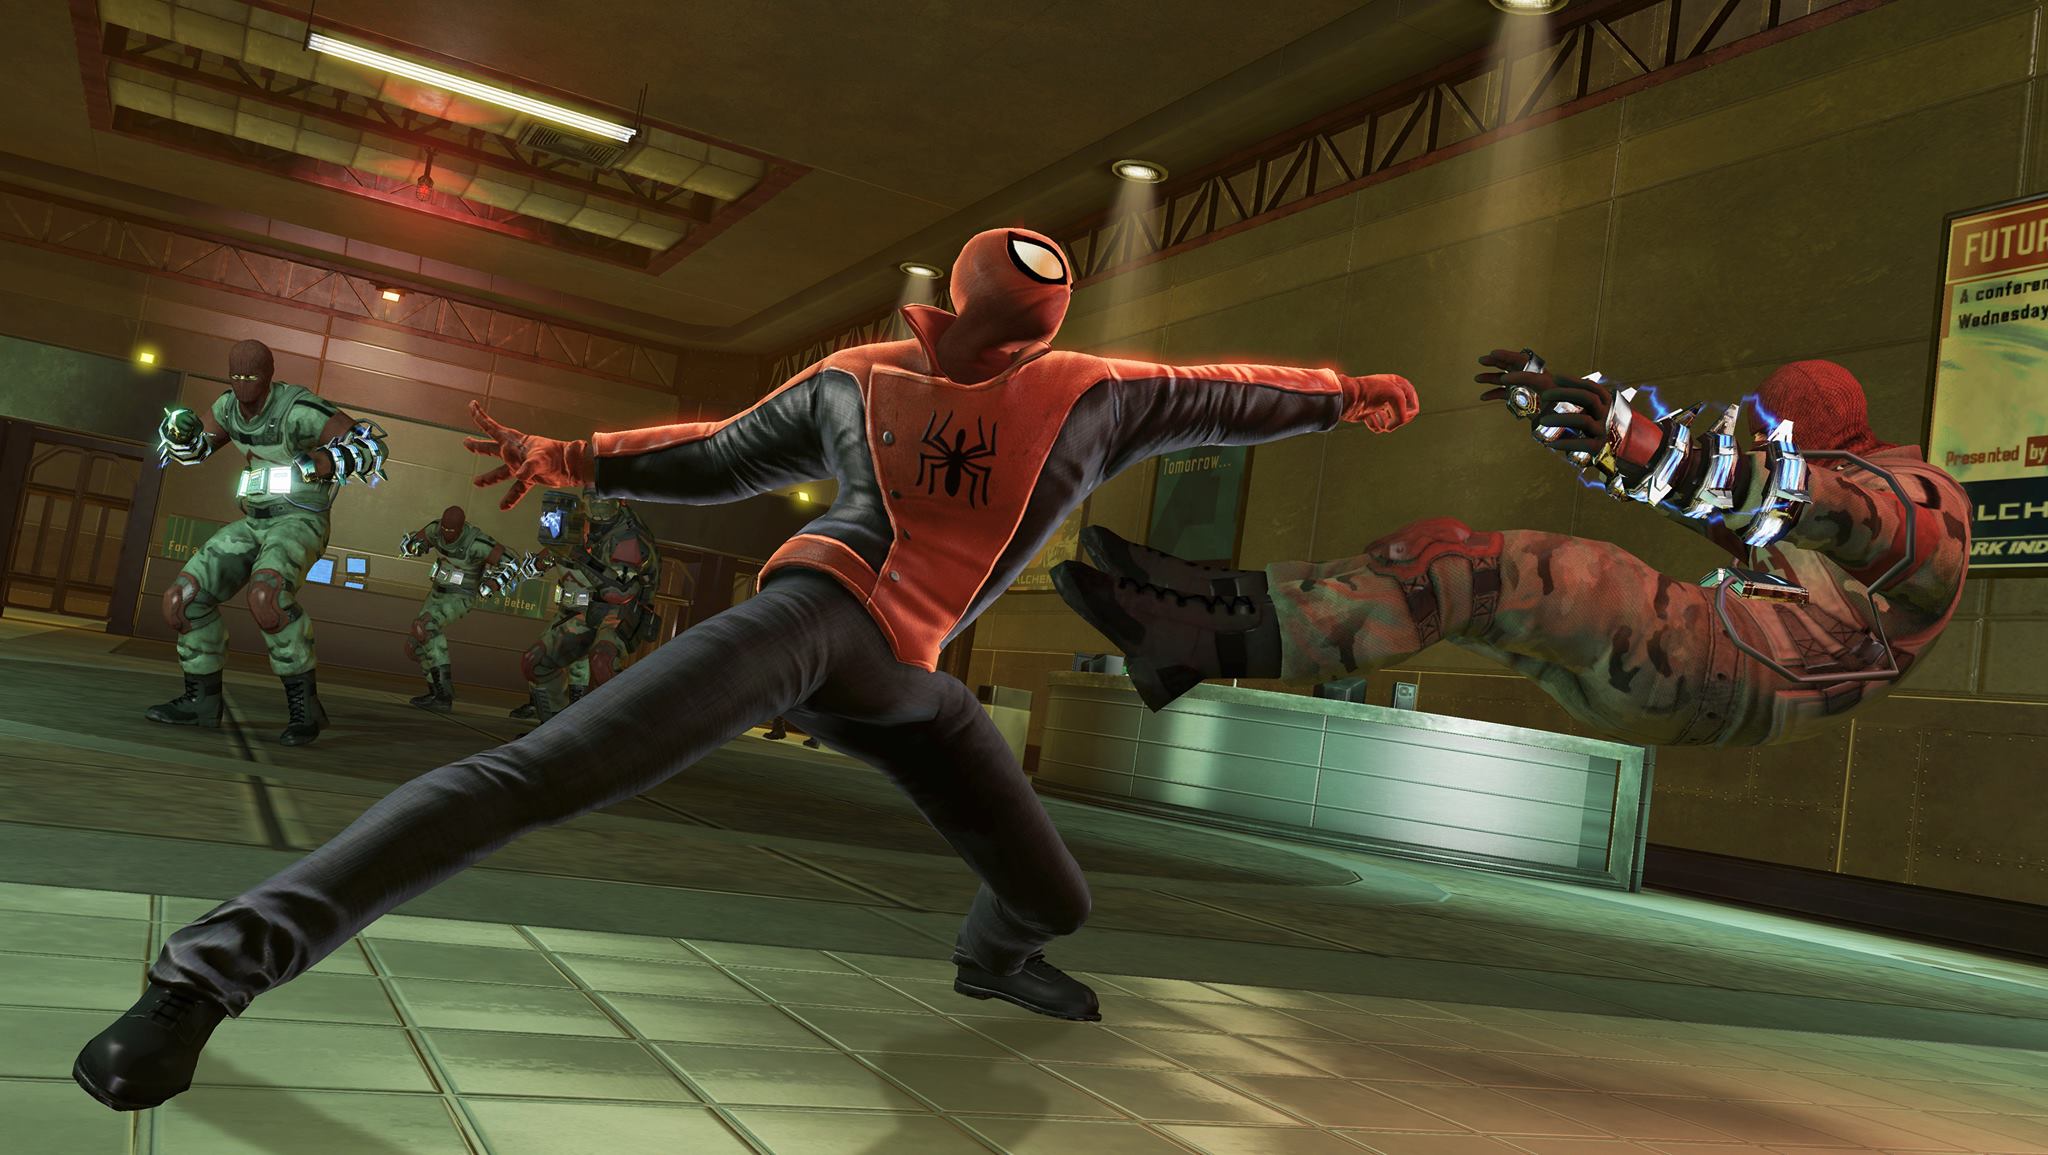 Jogo The Amazing Spider-Man 2 - PS3 - MeuGameUsado